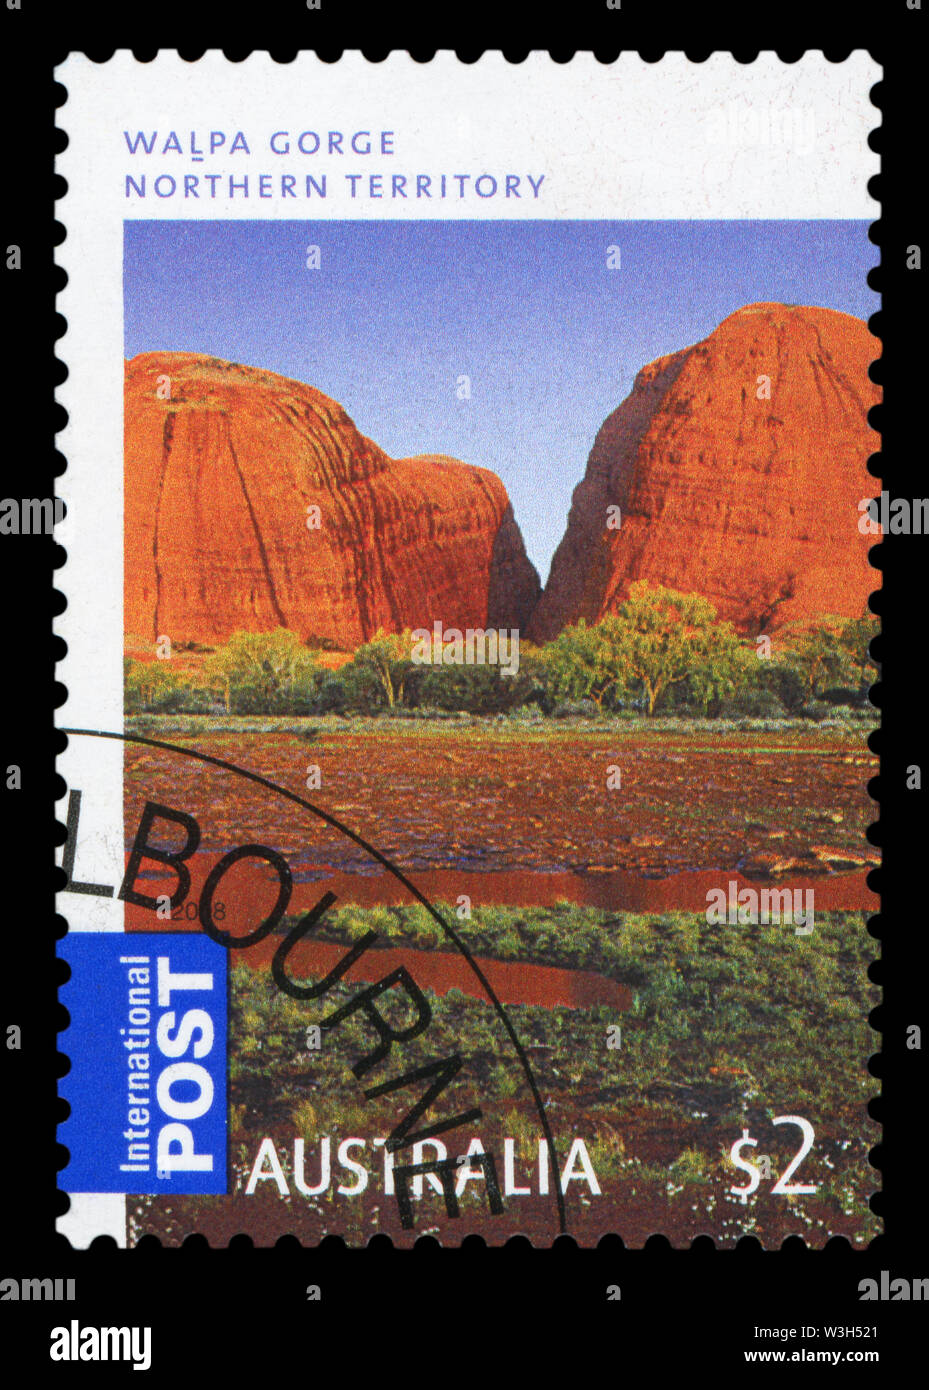 L'AUSTRALIE - circa 2008 : timbre imprimé dans le Territoire du Nord australien montre Walpa Gorge, circa 2008. Banque D'Images